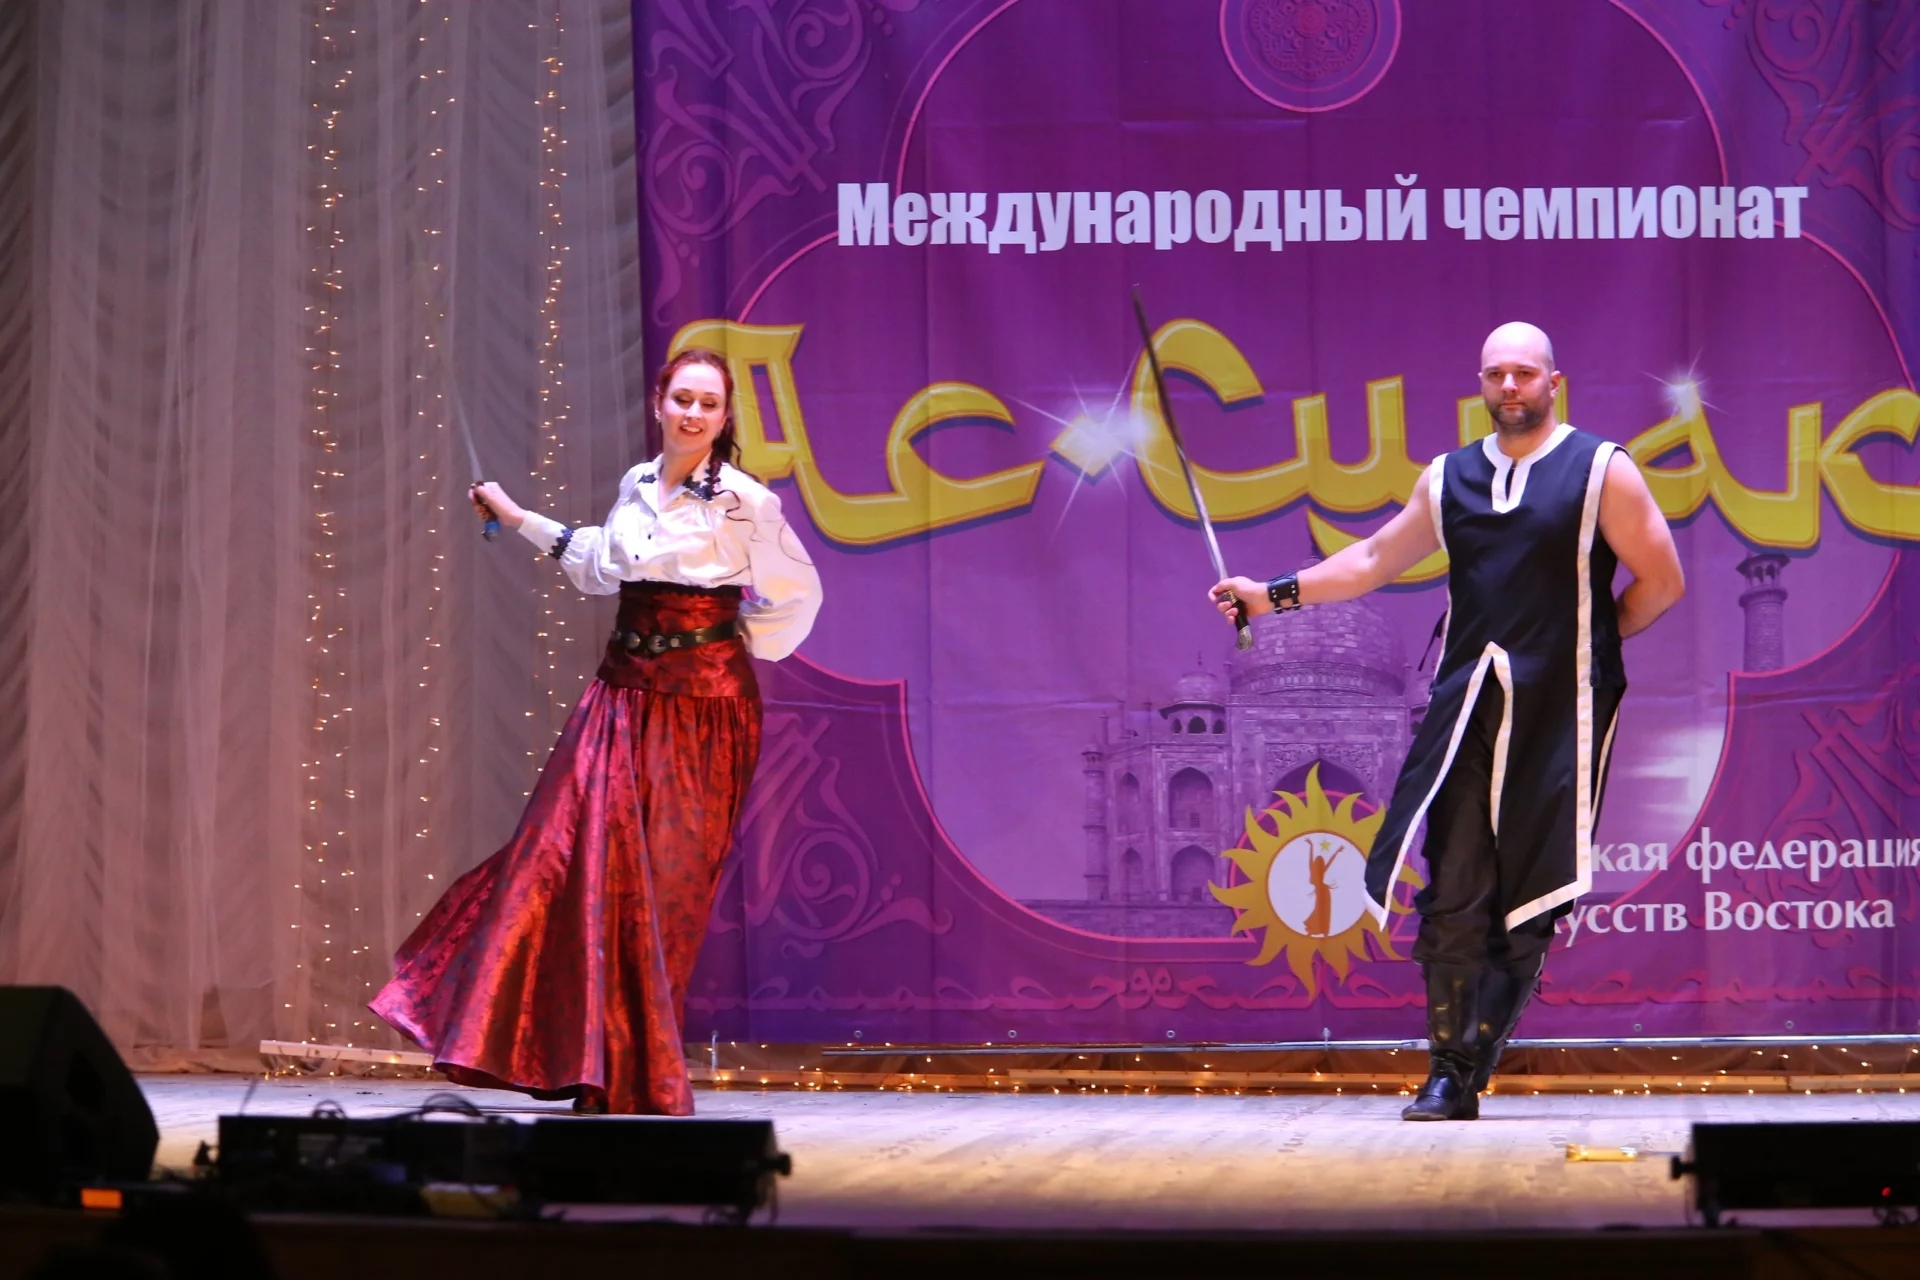 Пара из Миасса покоряет Россию, танцуя с шашками